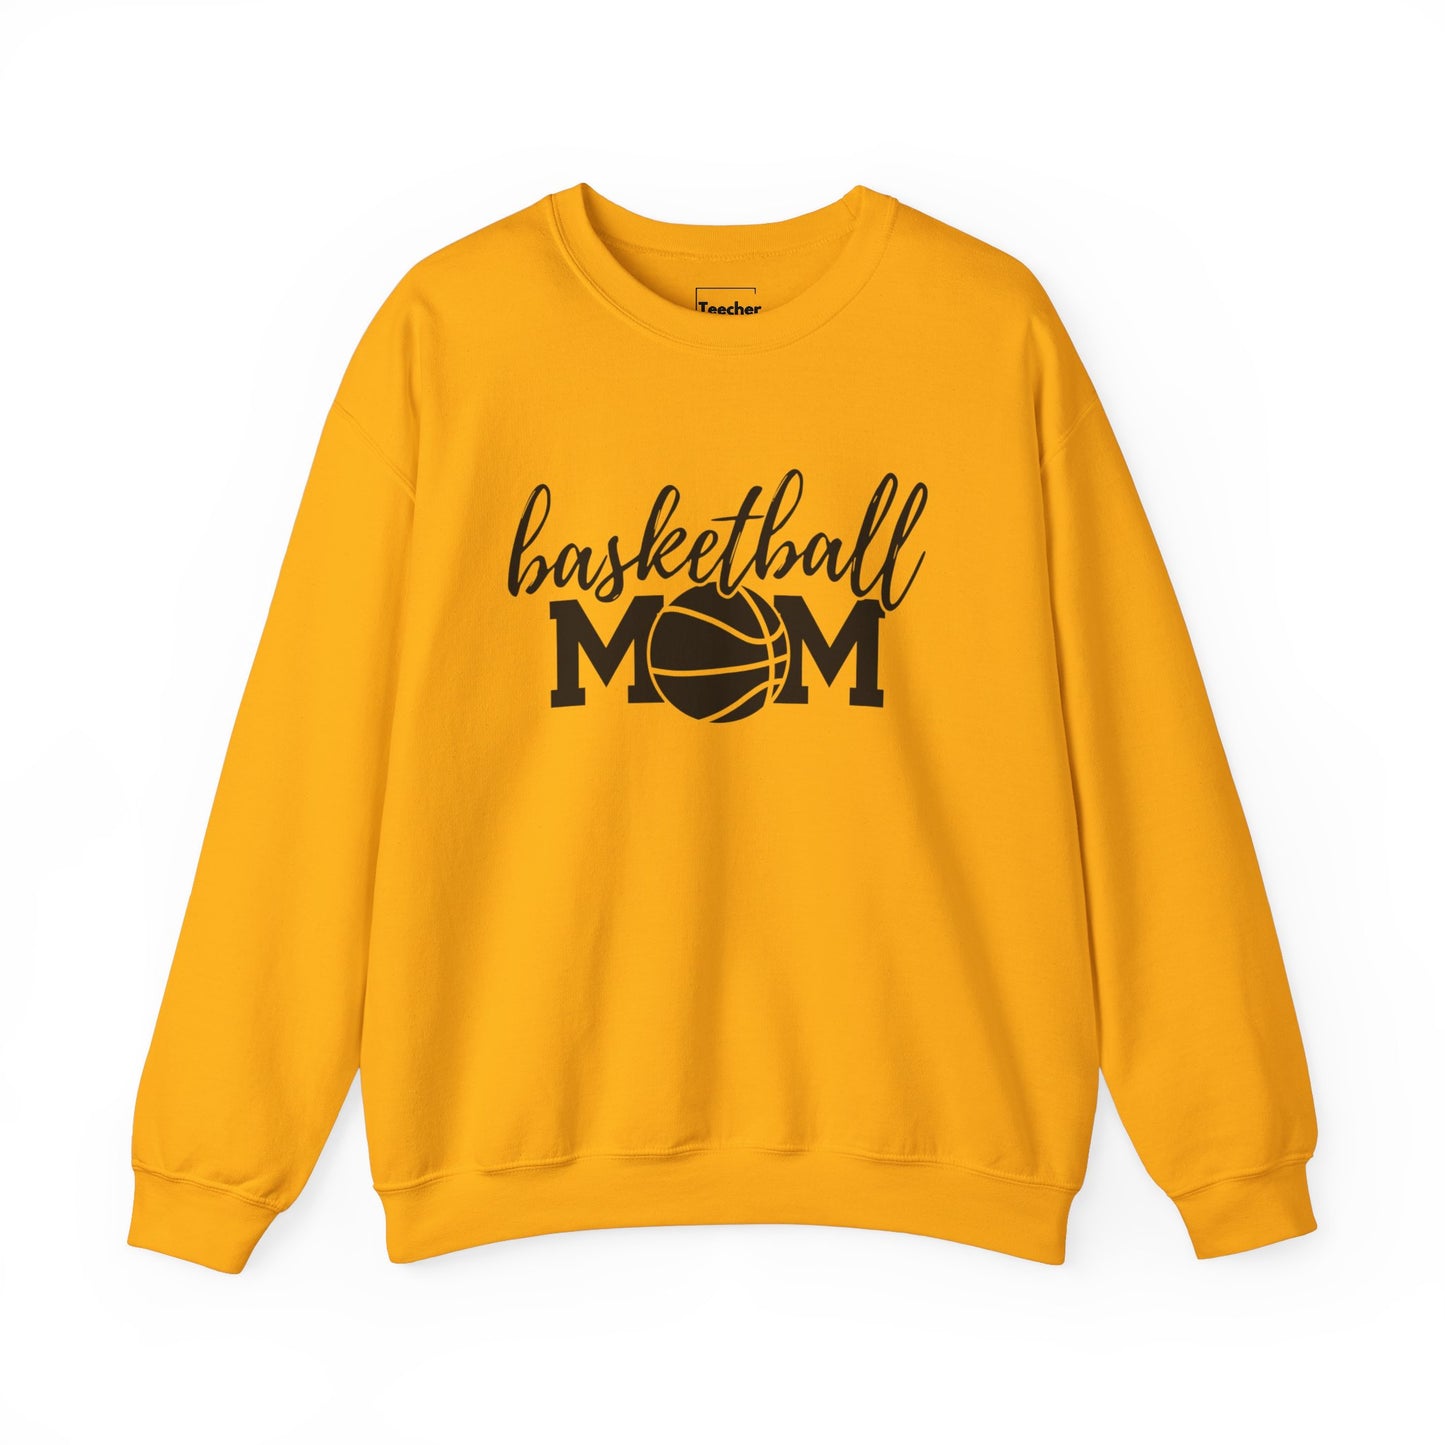 Basketball MOM Crewneck Sweatshirt